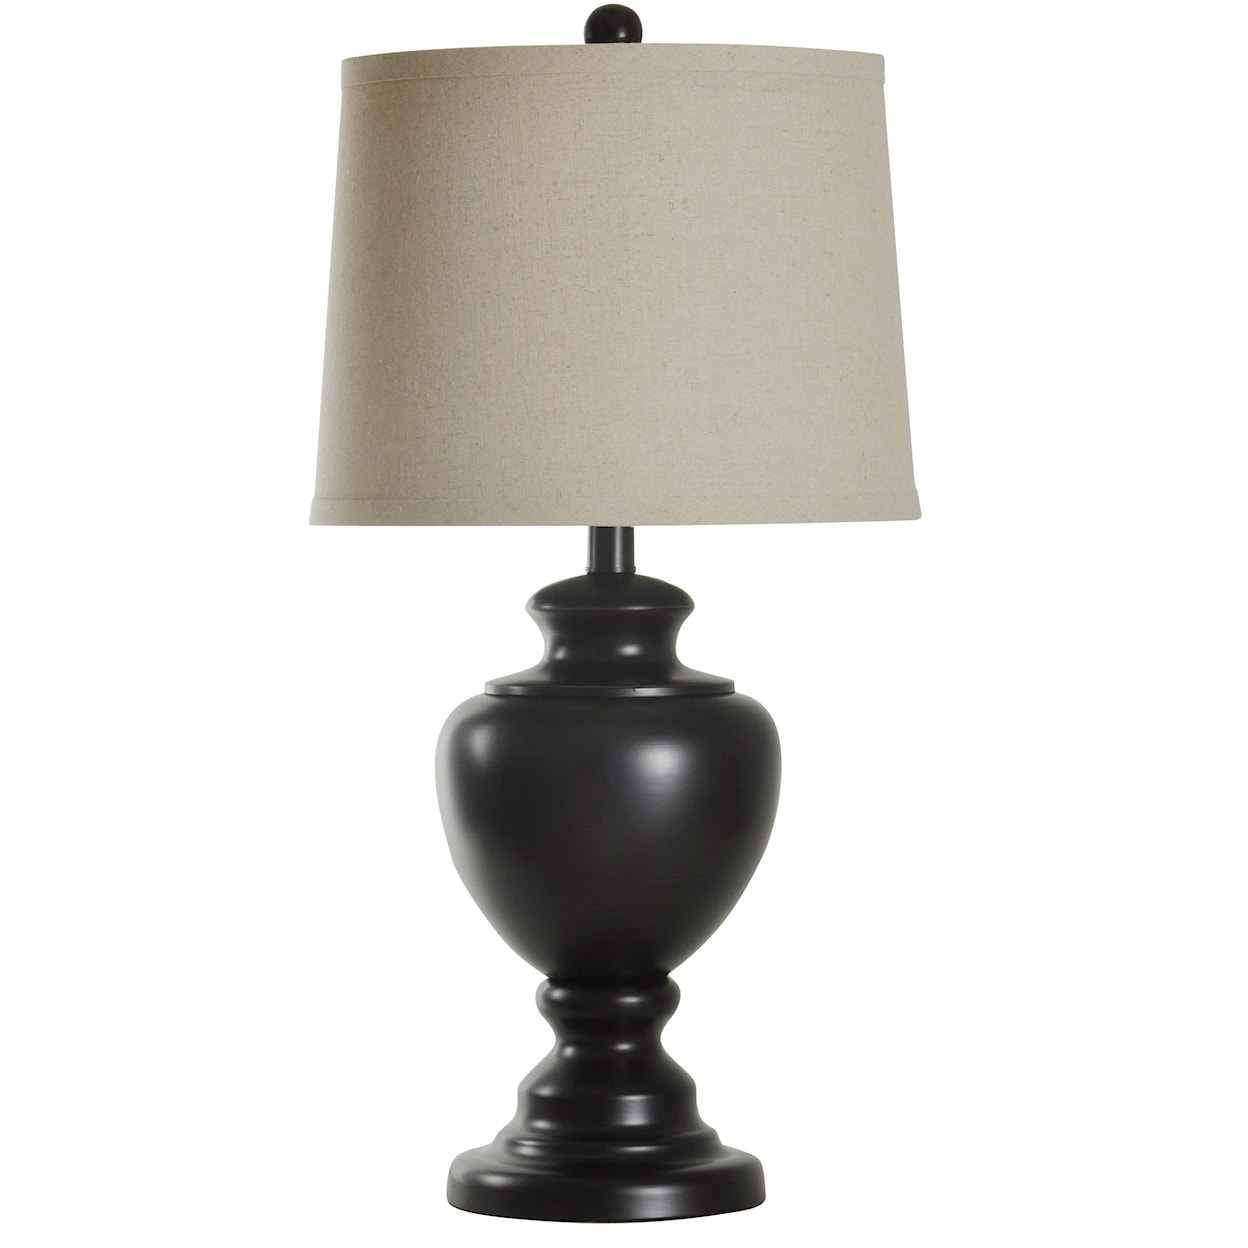 StyleCraft Lamps Lamp